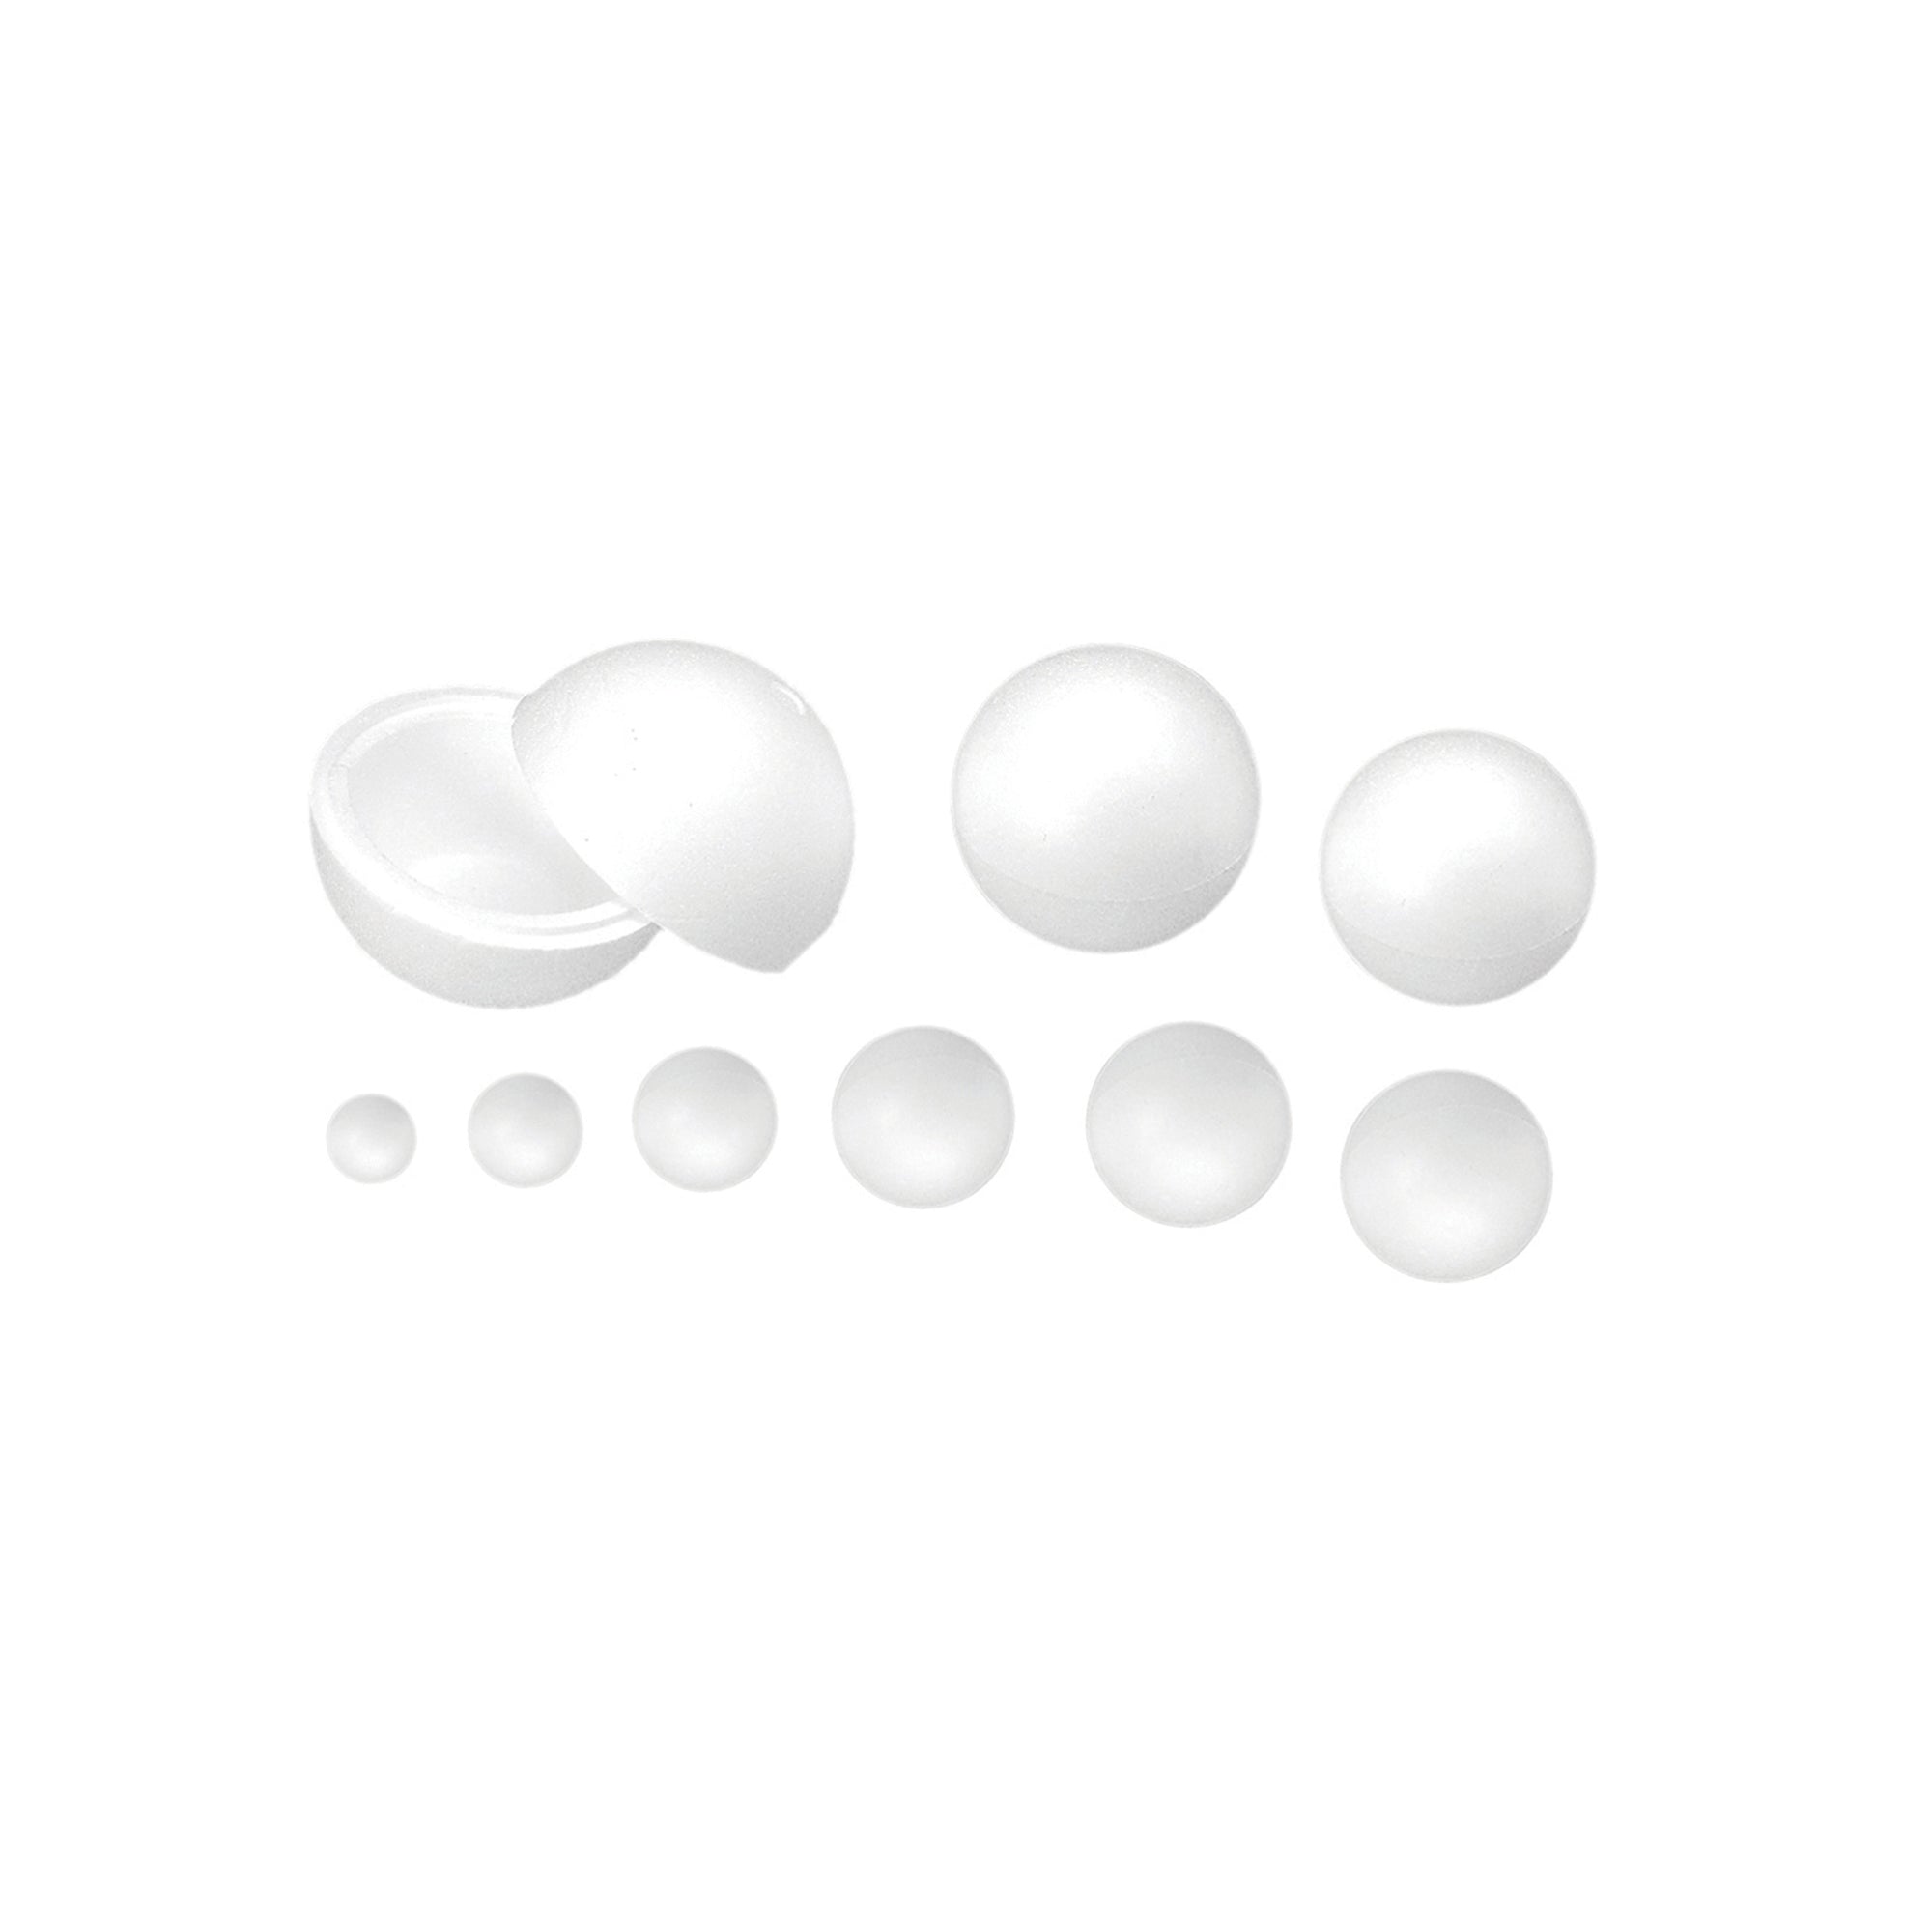 ri-plast-sfera-polistirolo-espanso-d60mm-ri-plast